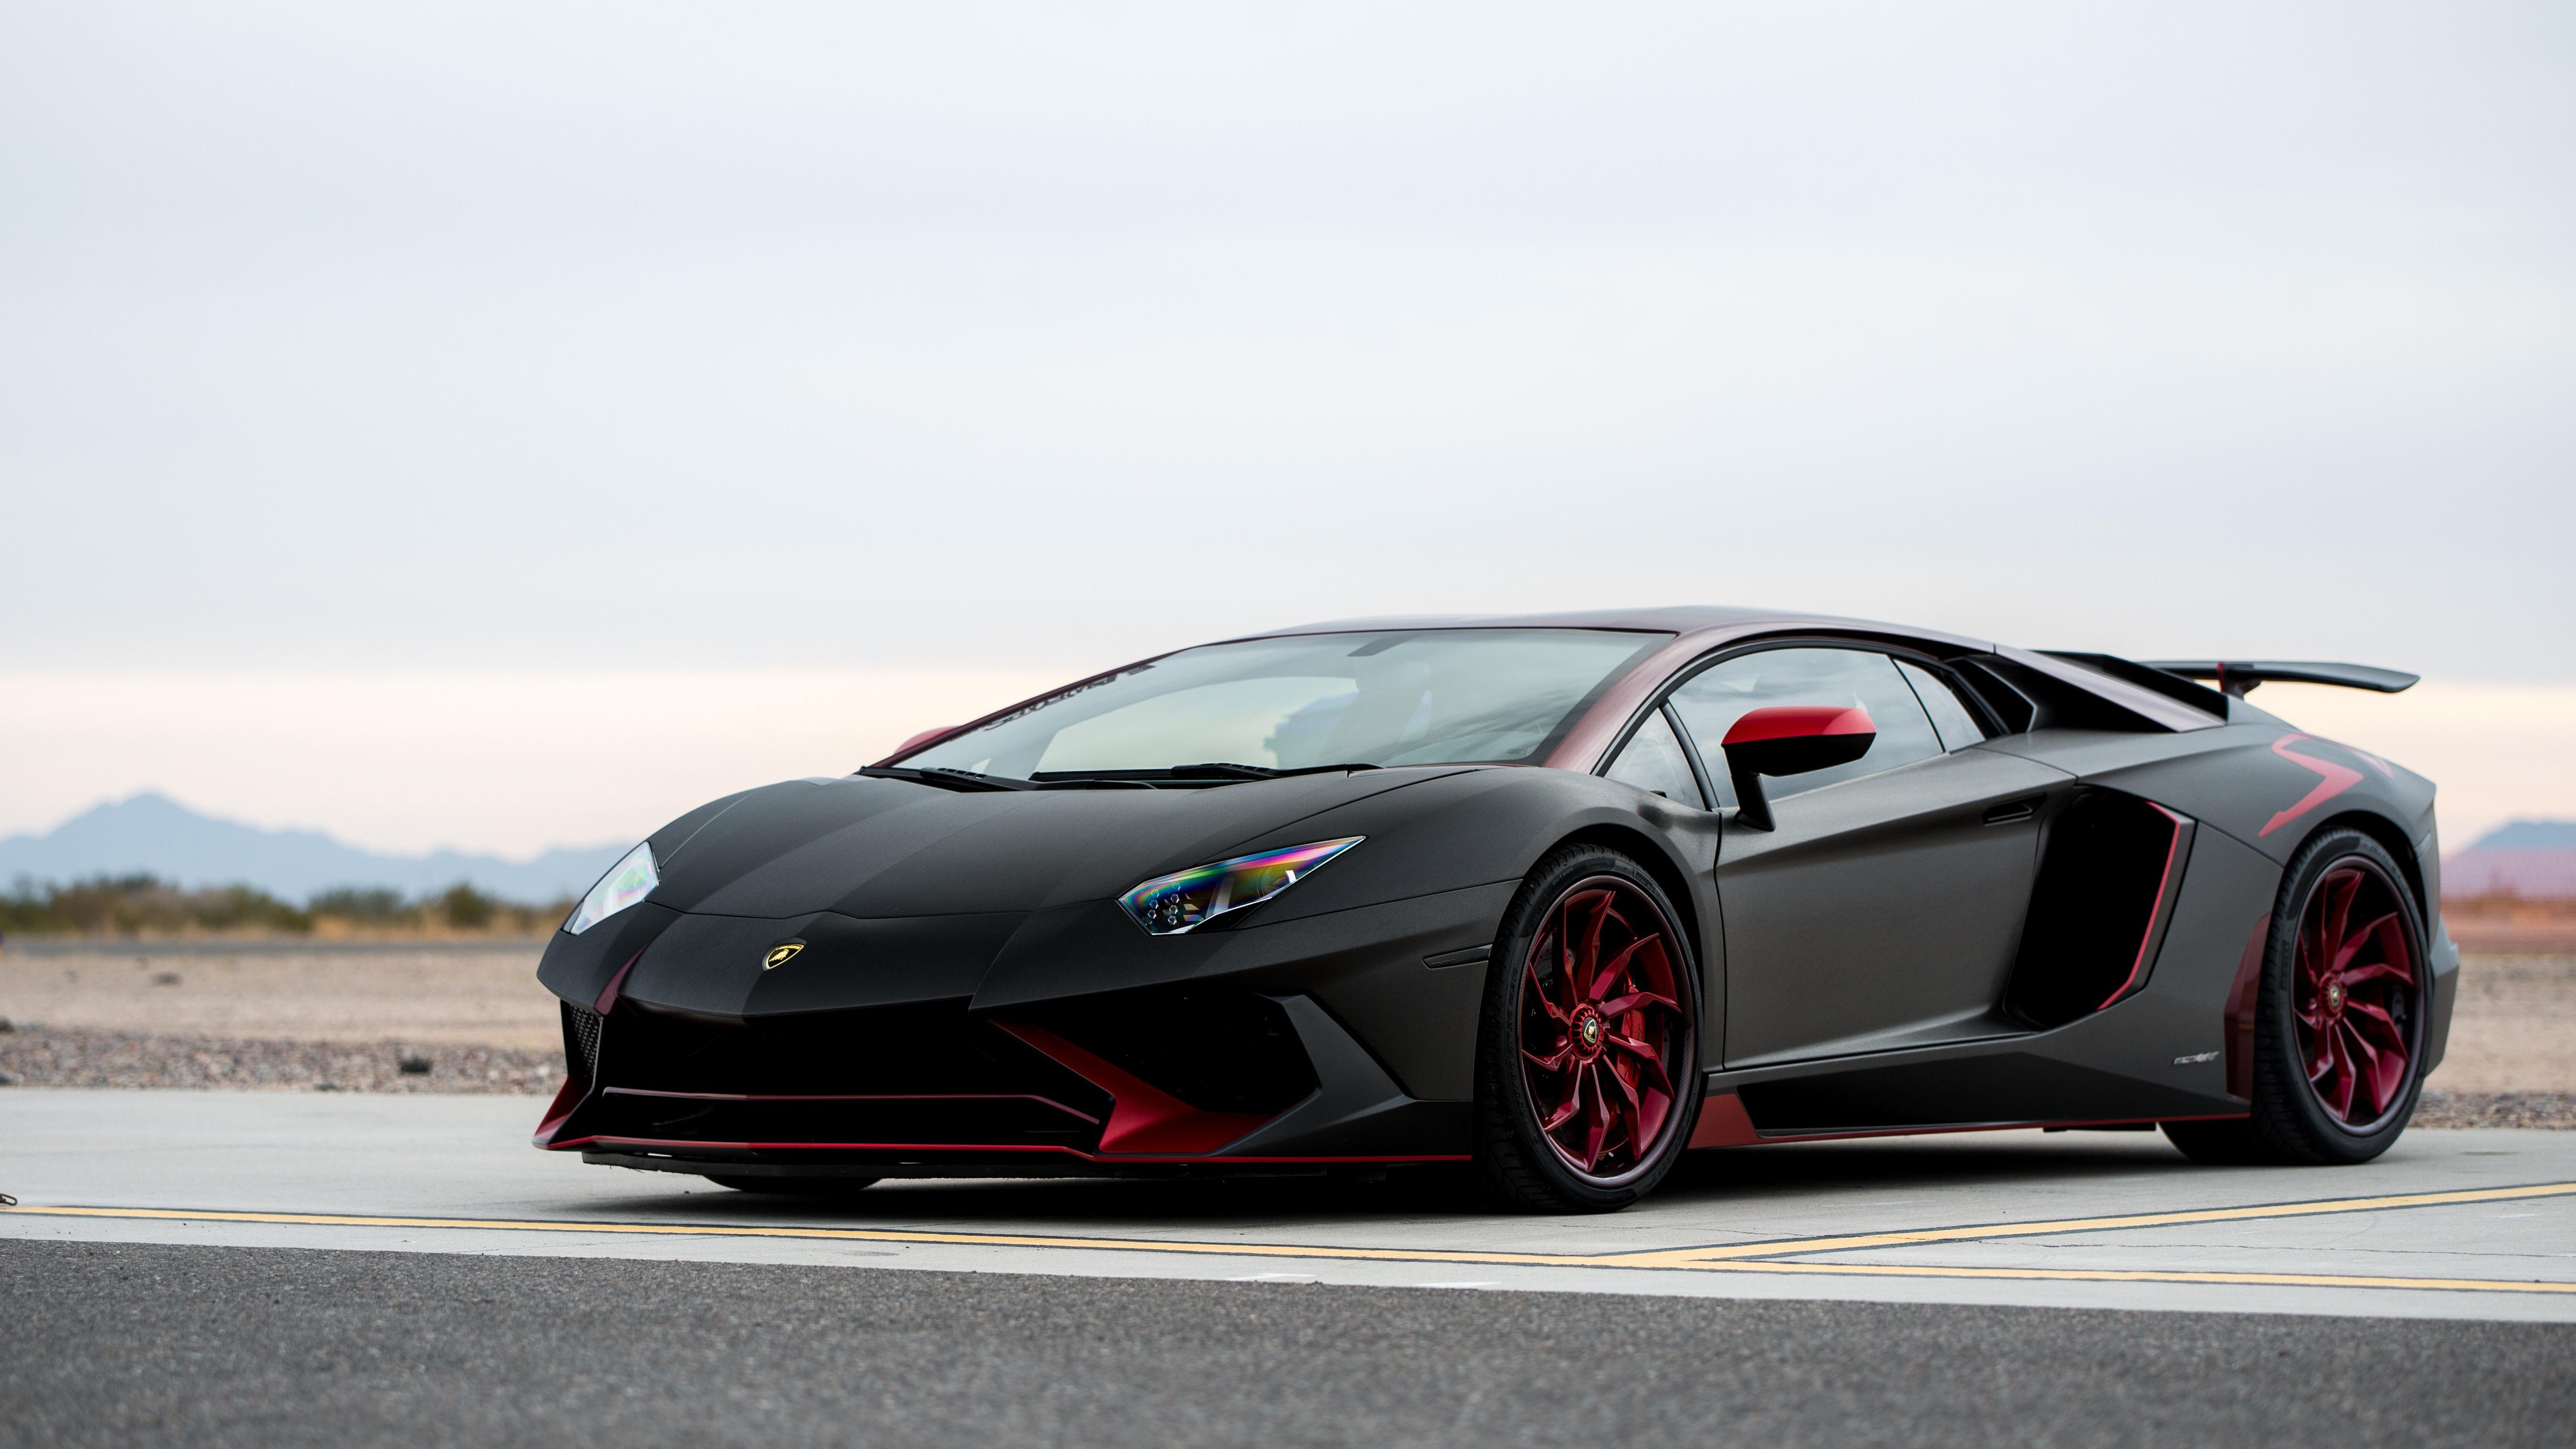 Với độ phân giải cao và màu sắc sống động, hình nền Lamborghini 4k sẽ khiến cho màn hình của bạn trở nên đầy sức hút và ấn tượng. Cùng đắm mình vào thế giới của những siêu xe đắt tiền và đẳng cấp với bộ sưu tập hình nền Lamborghini 4k.